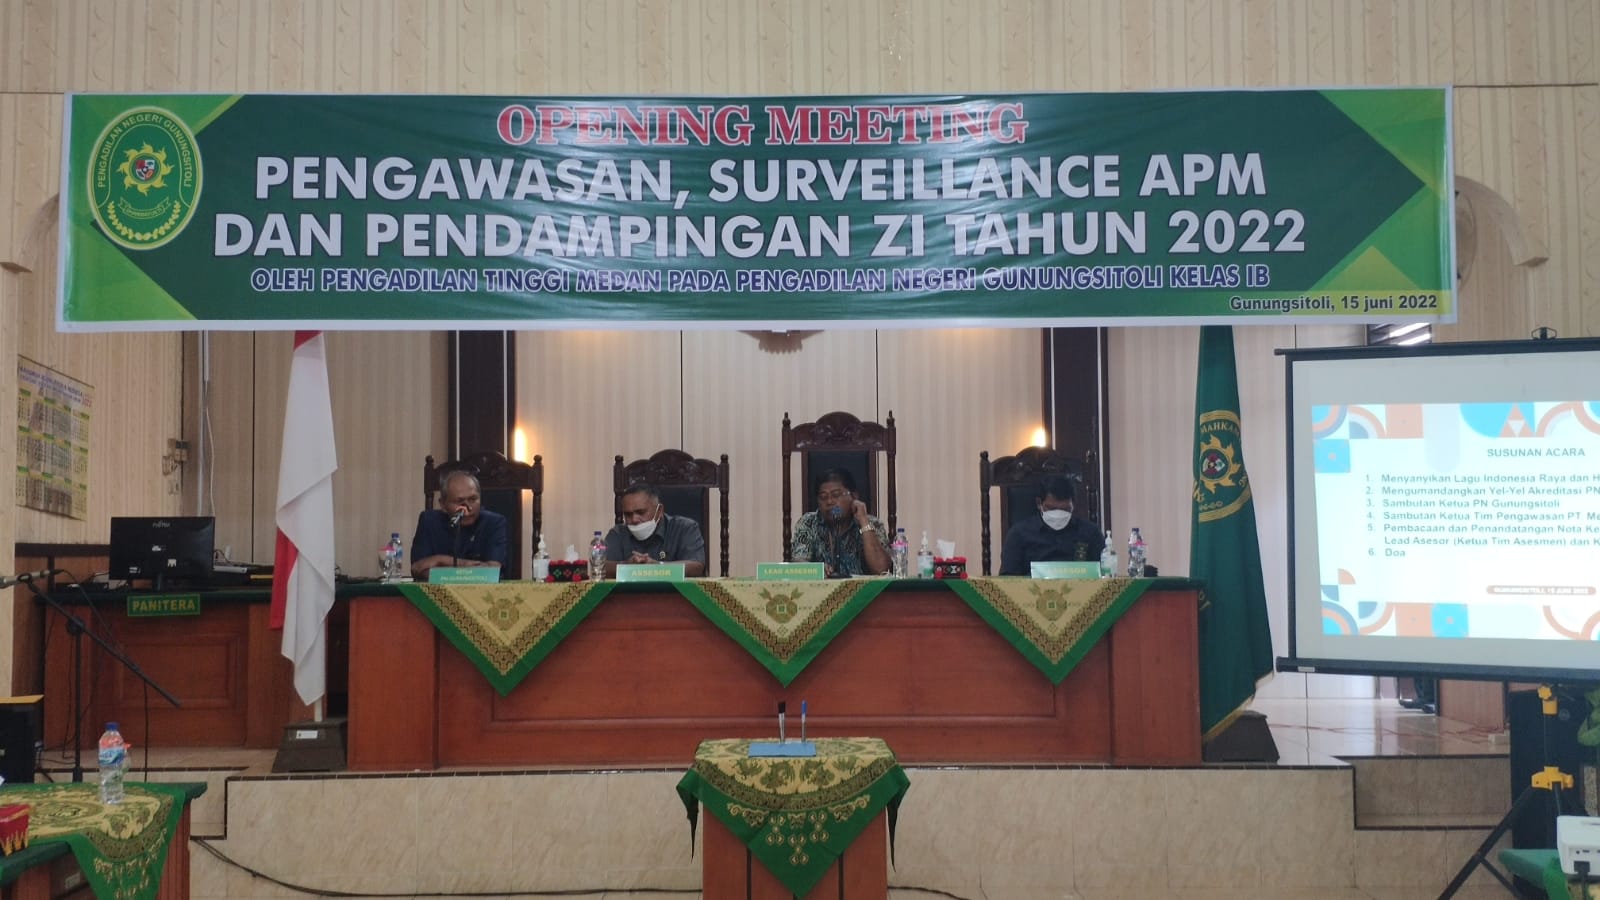 Opening Meeting Pembinaan Surveilan APM dan Pendampingan ZI Oleh Pengadilan Tinggi Medan